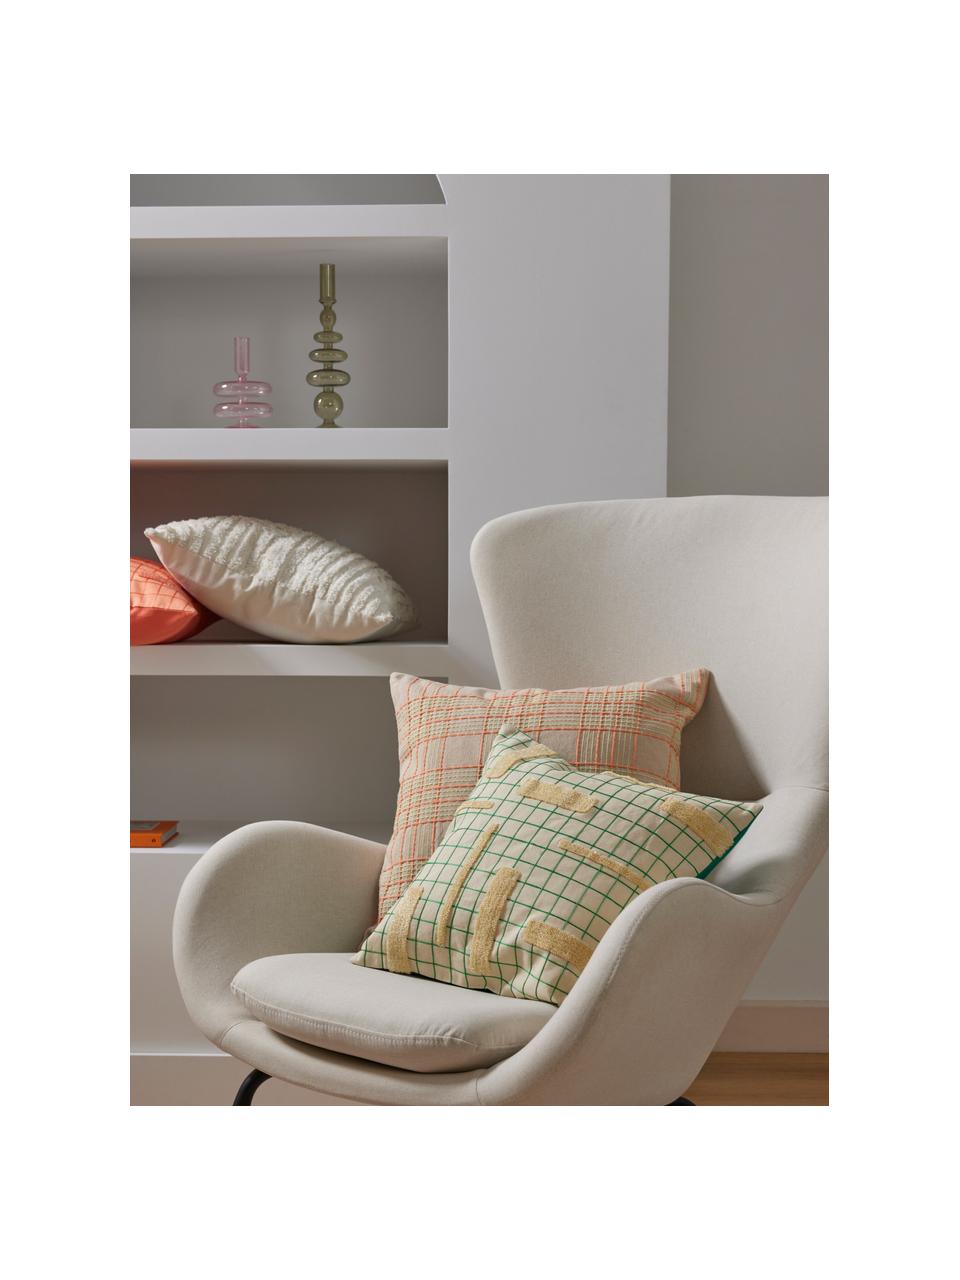 Poszewka na poduszkę z bawełny Orla, 100% bawełna, Pomarańczowy, S 45 x D 45 cm